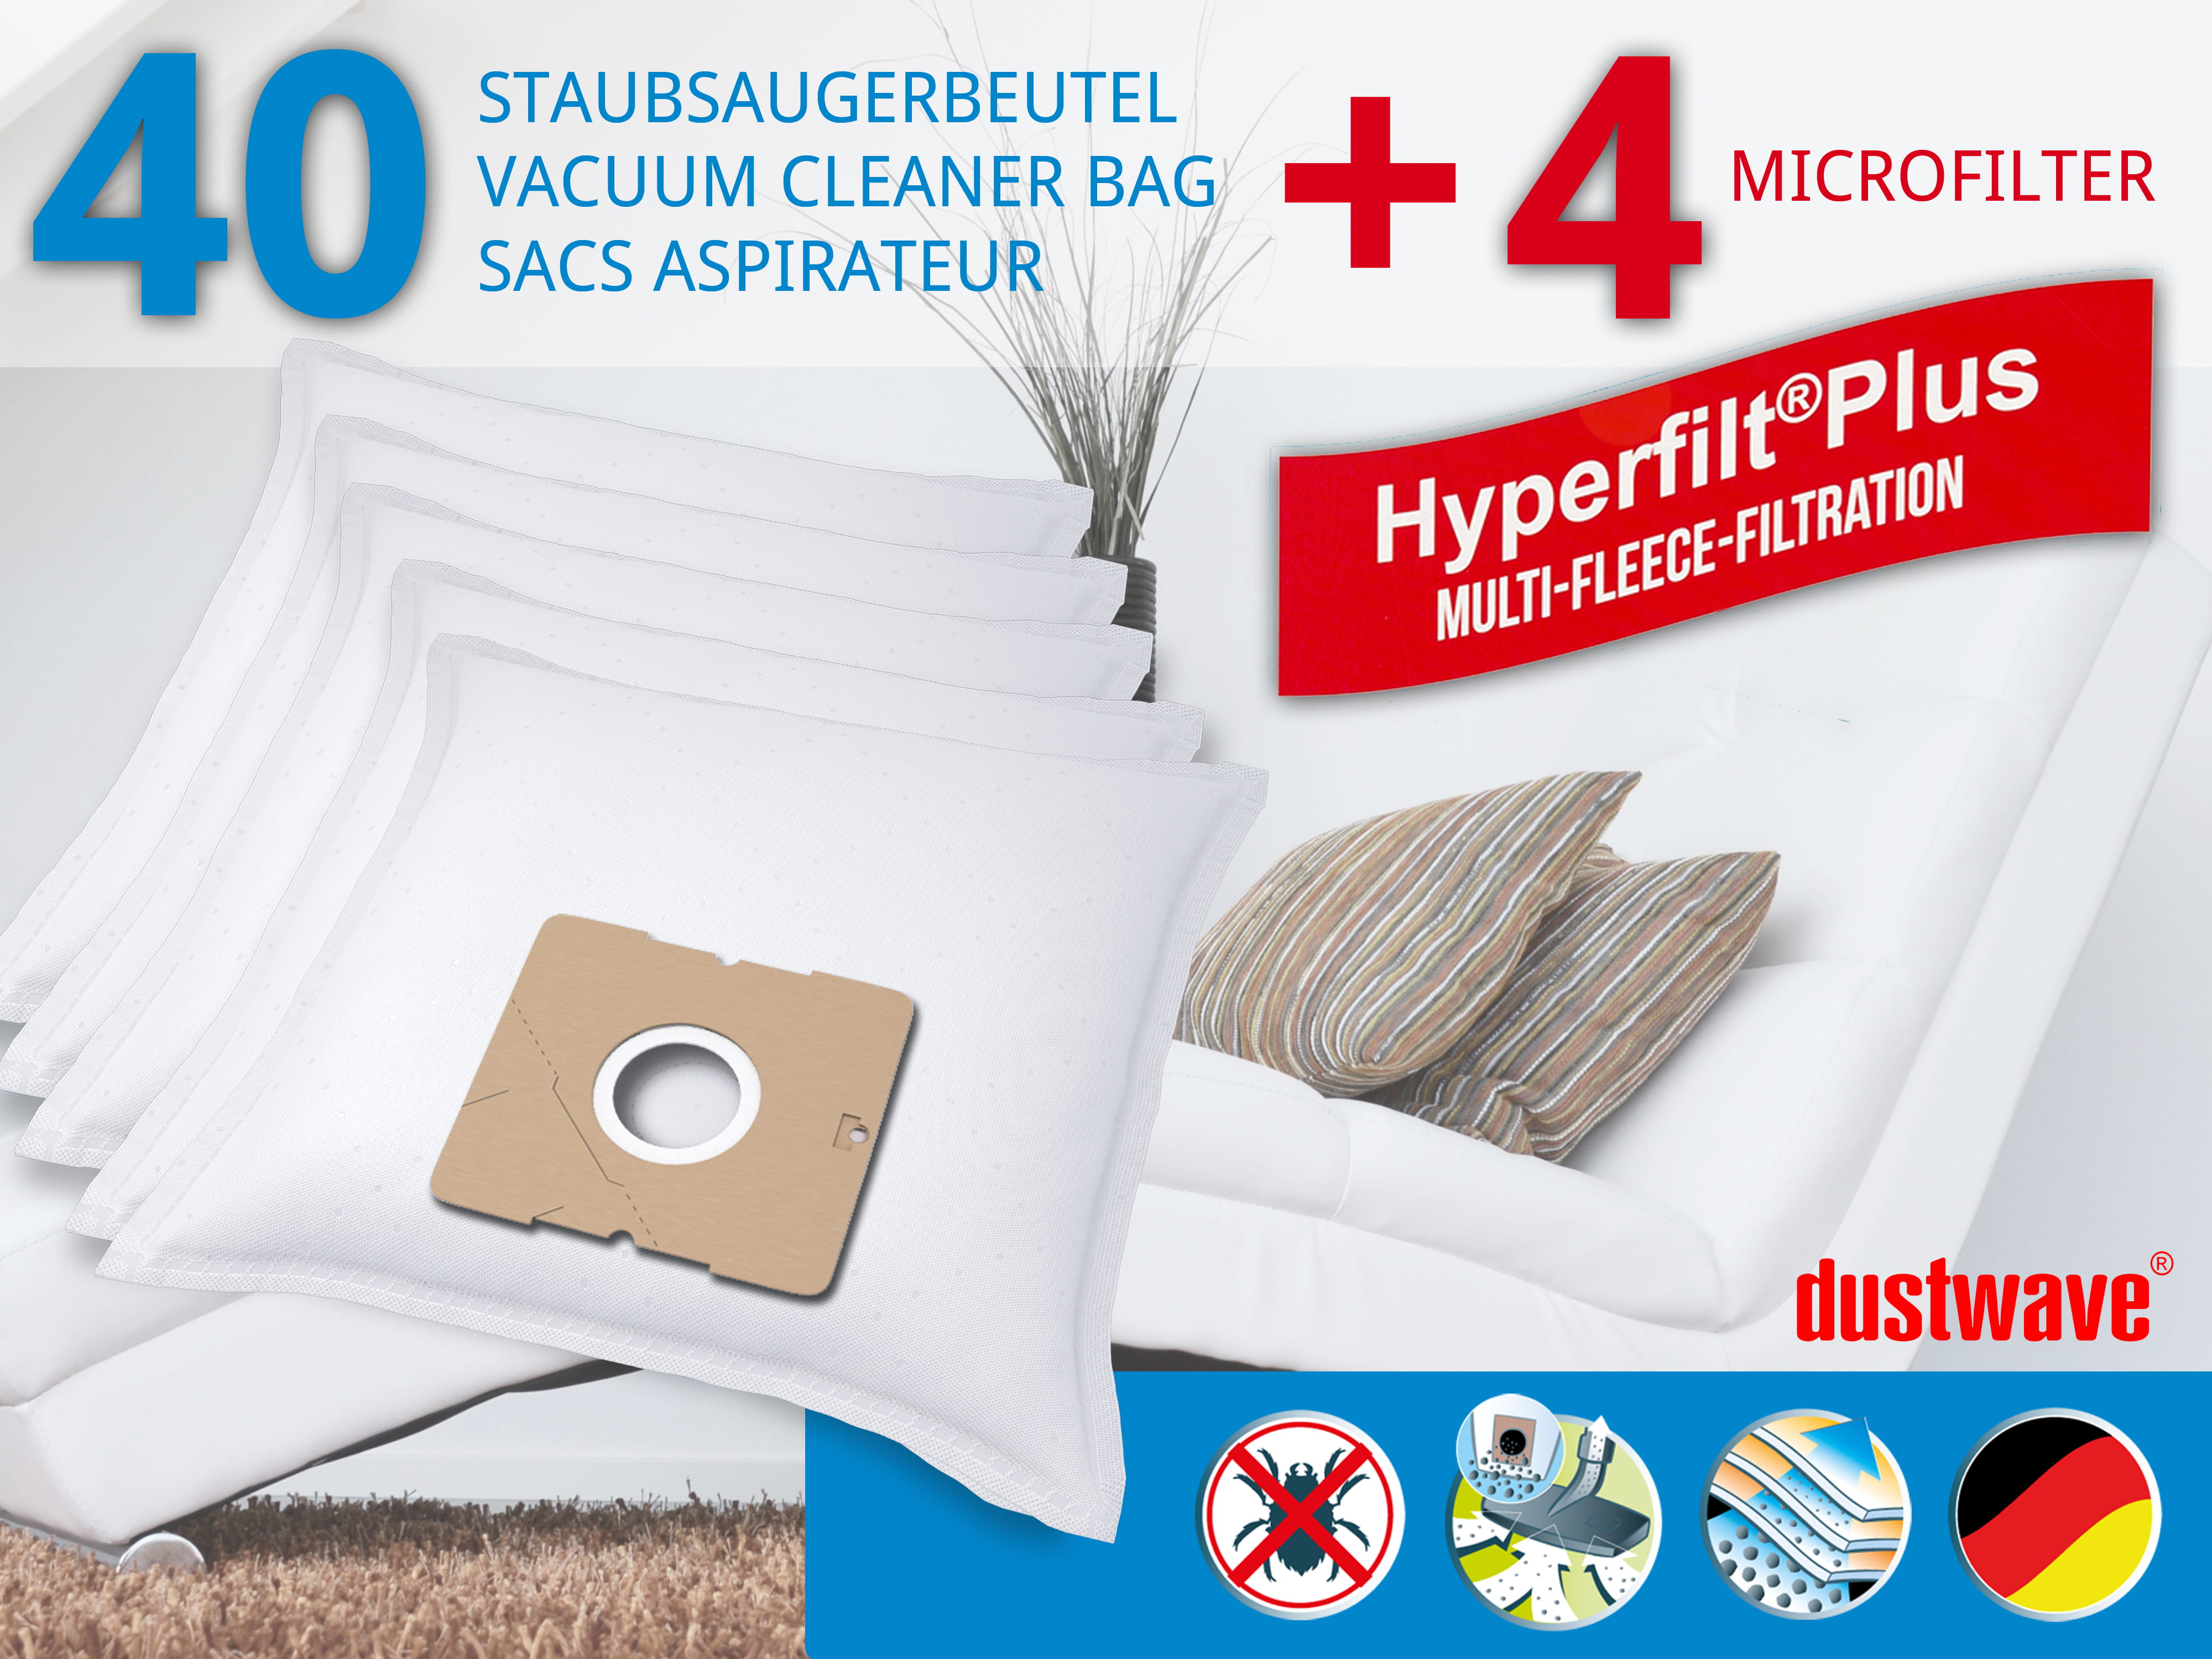 Dustwave® 40 Staubsaugerbeutel für SWIRL Y 101 - hocheffizient, mehrlagiges Mikrovlies mit Hygieneverschluss - Made in Germany